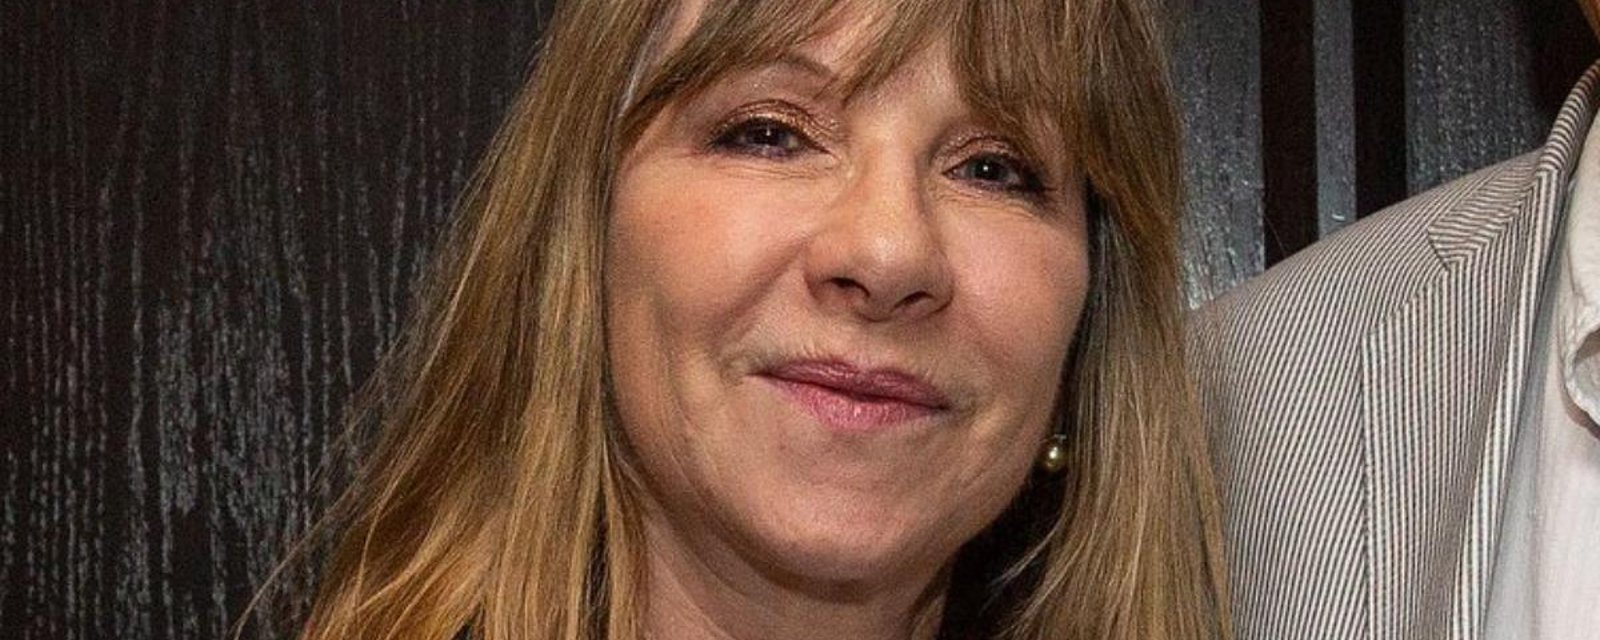 La productrice du film “La parfaite victime”, Denise Robert, révèle avoir été victime d’agressions sexuelles